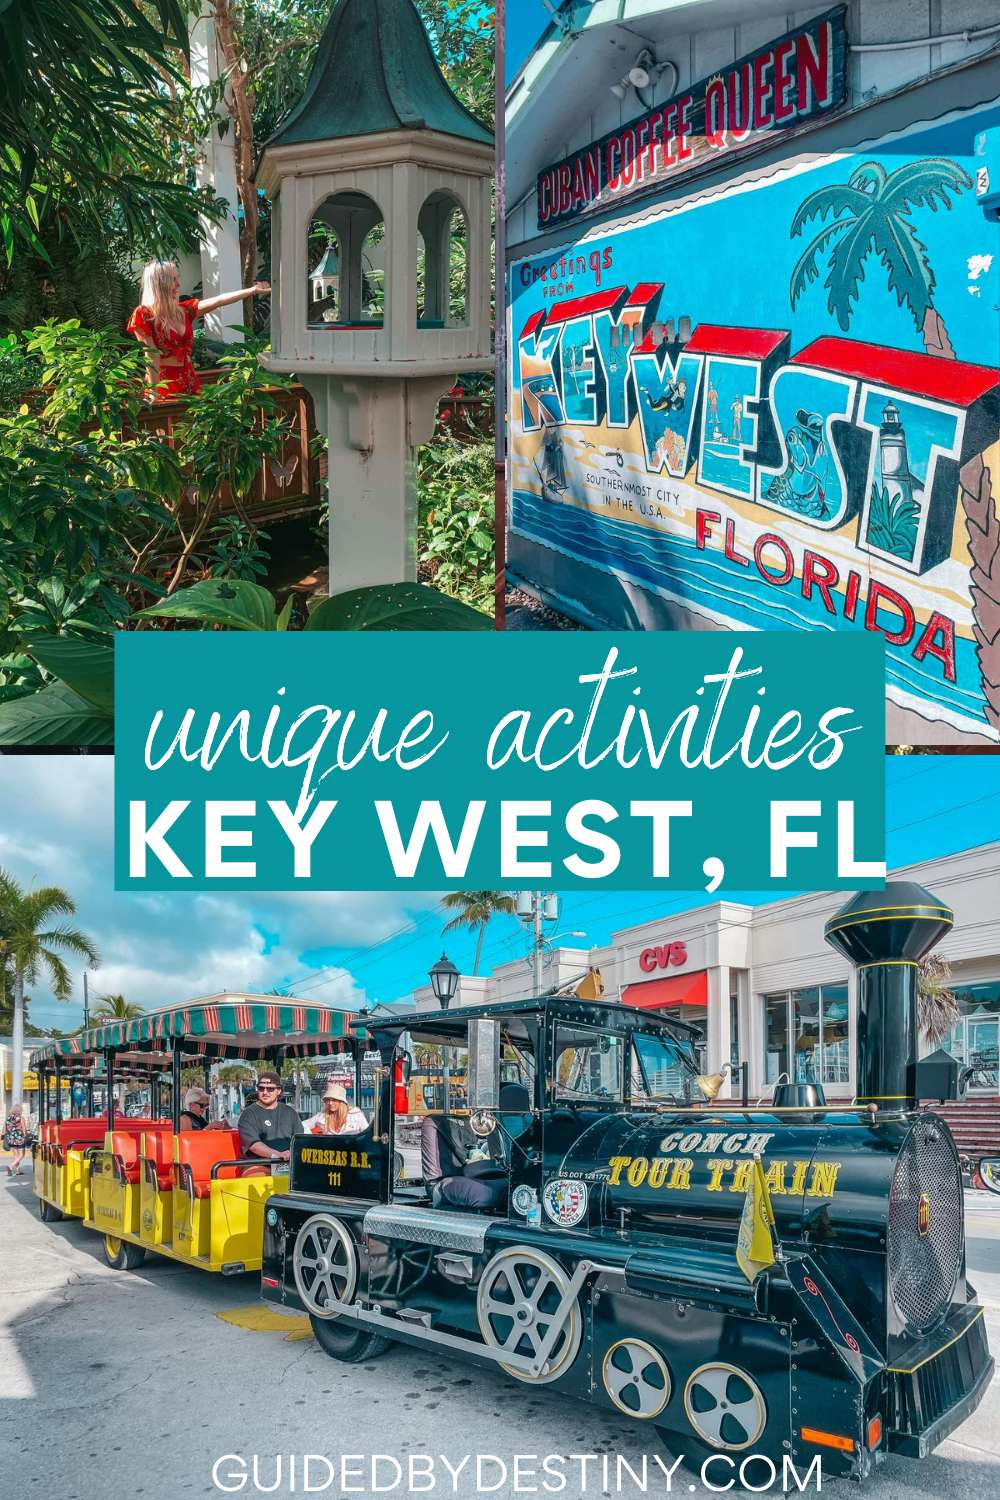 Unique activities Key West, FL